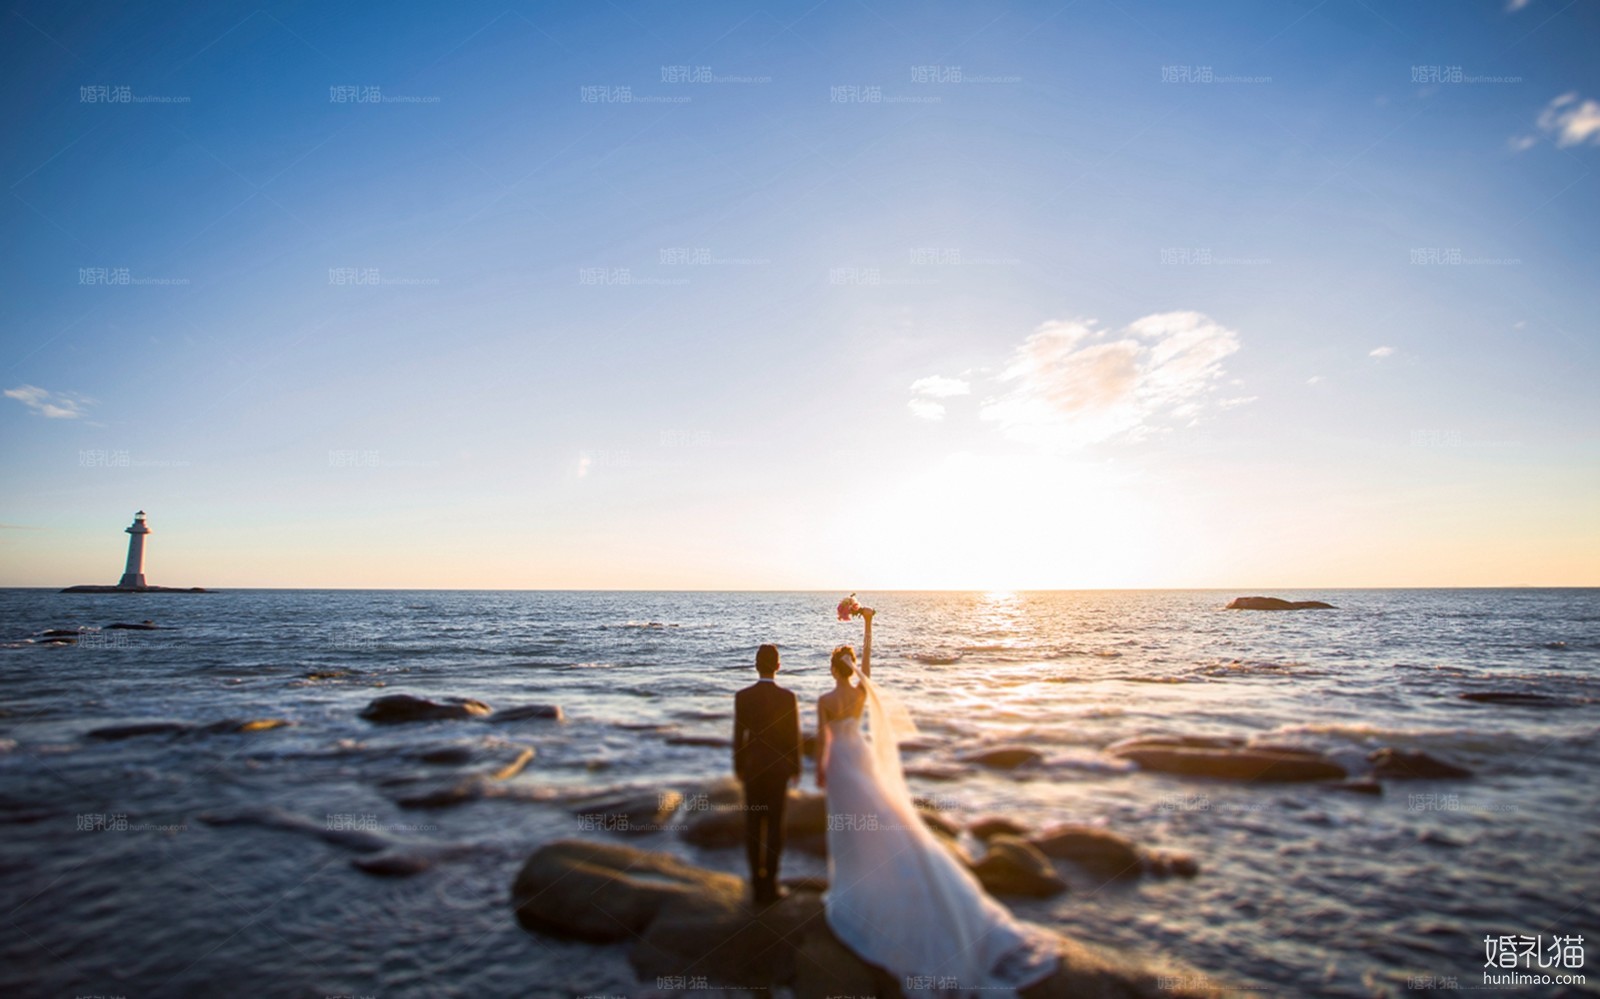 海景婚纱摄影,[海景, 礁石],三亚婚纱照,婚纱照图片